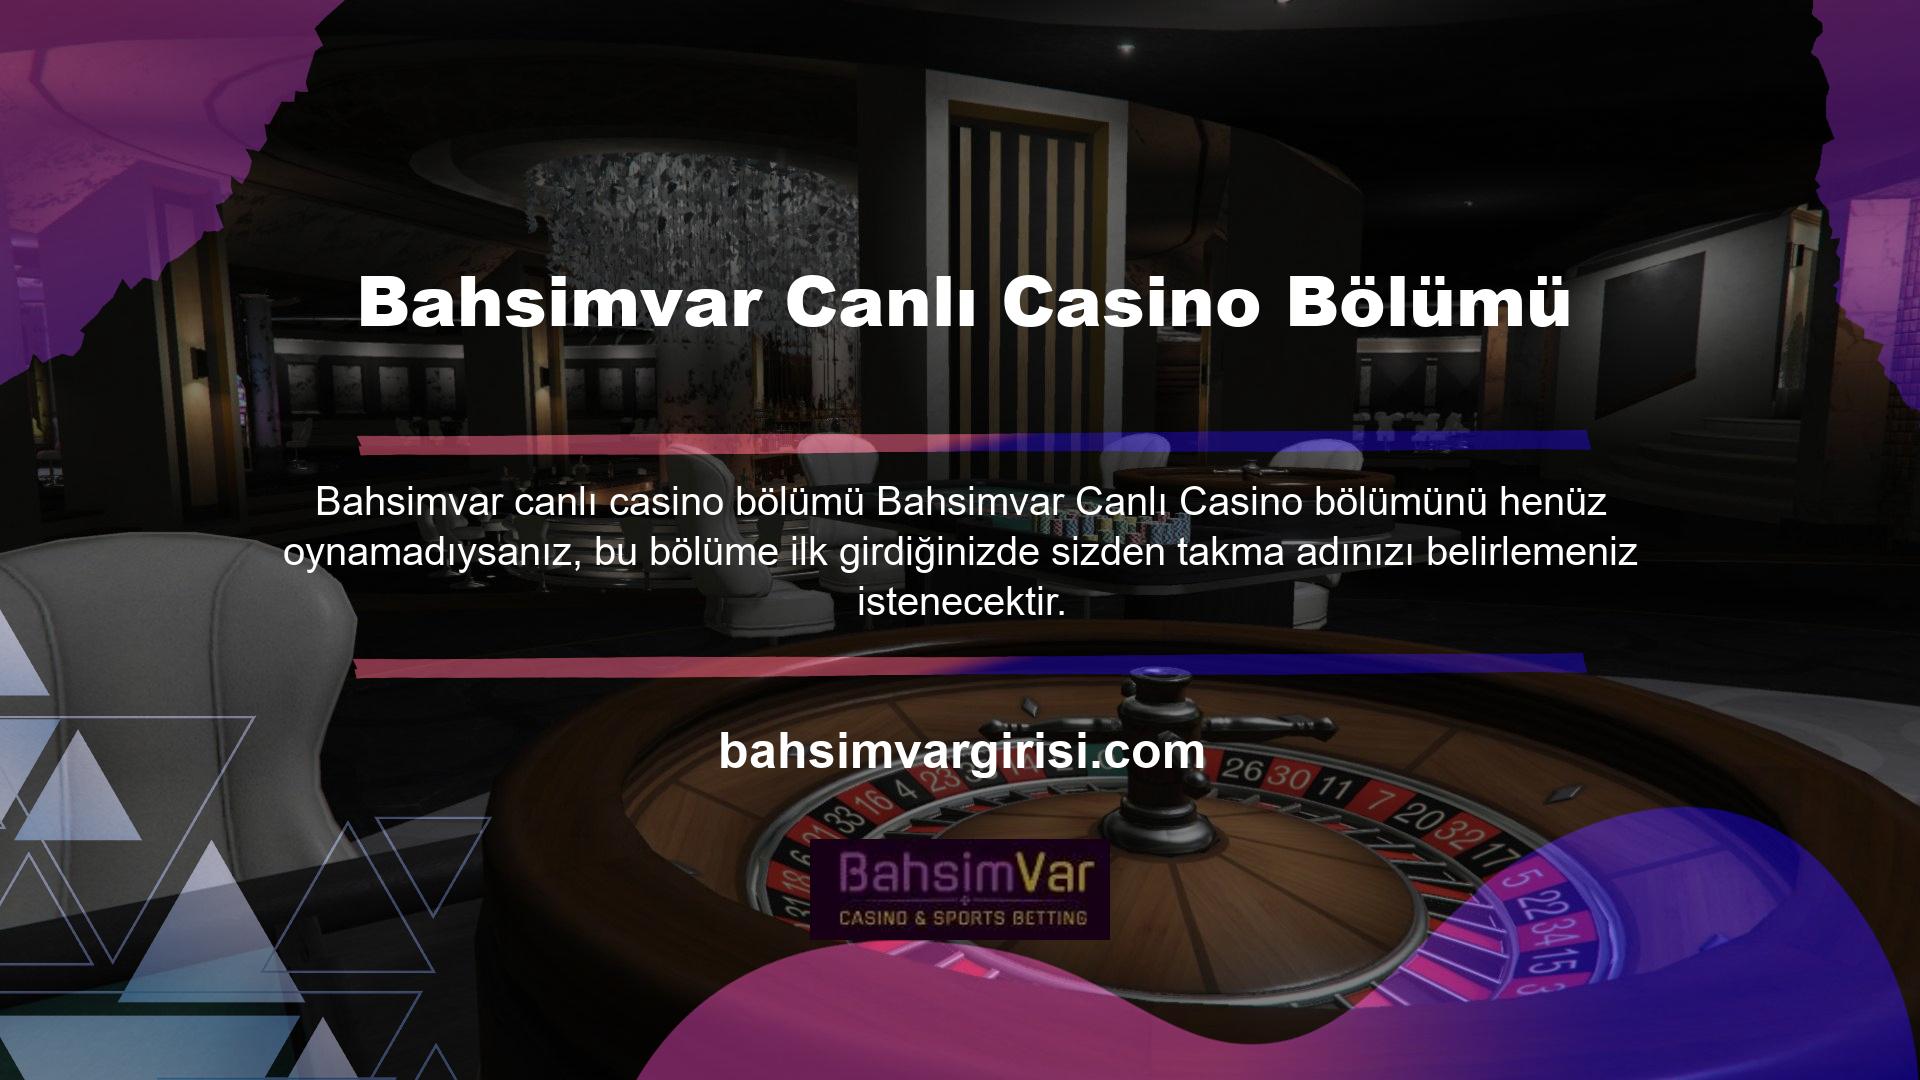 Bahsimvar Canlı Casino'da belirlediği takma ad değişmeyecektir